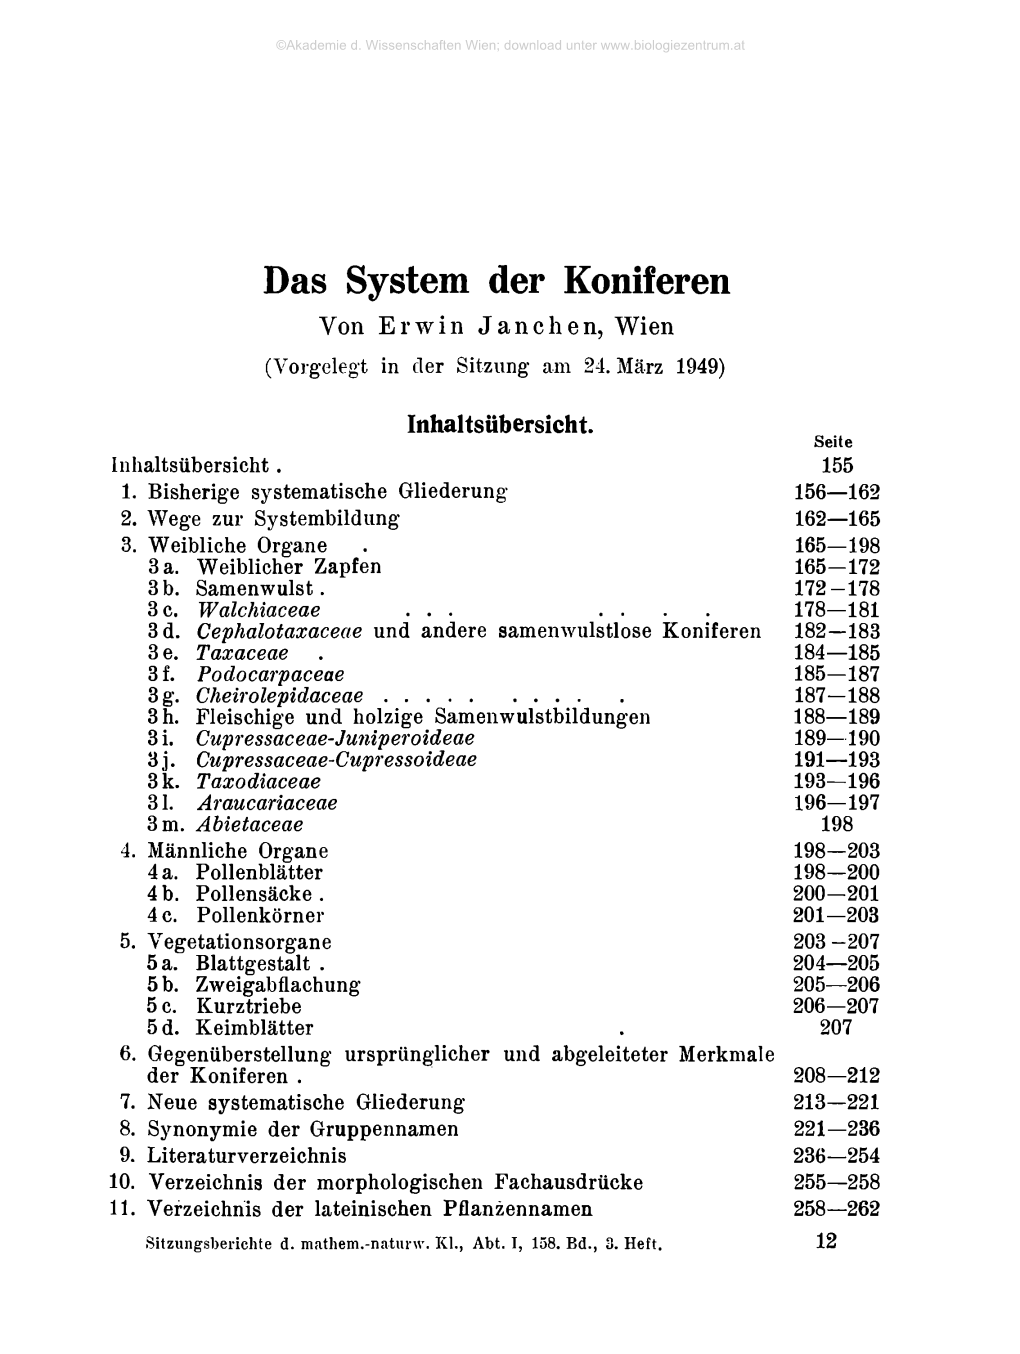 Das System Der Koniferen Von Erwin Janchen, Wien